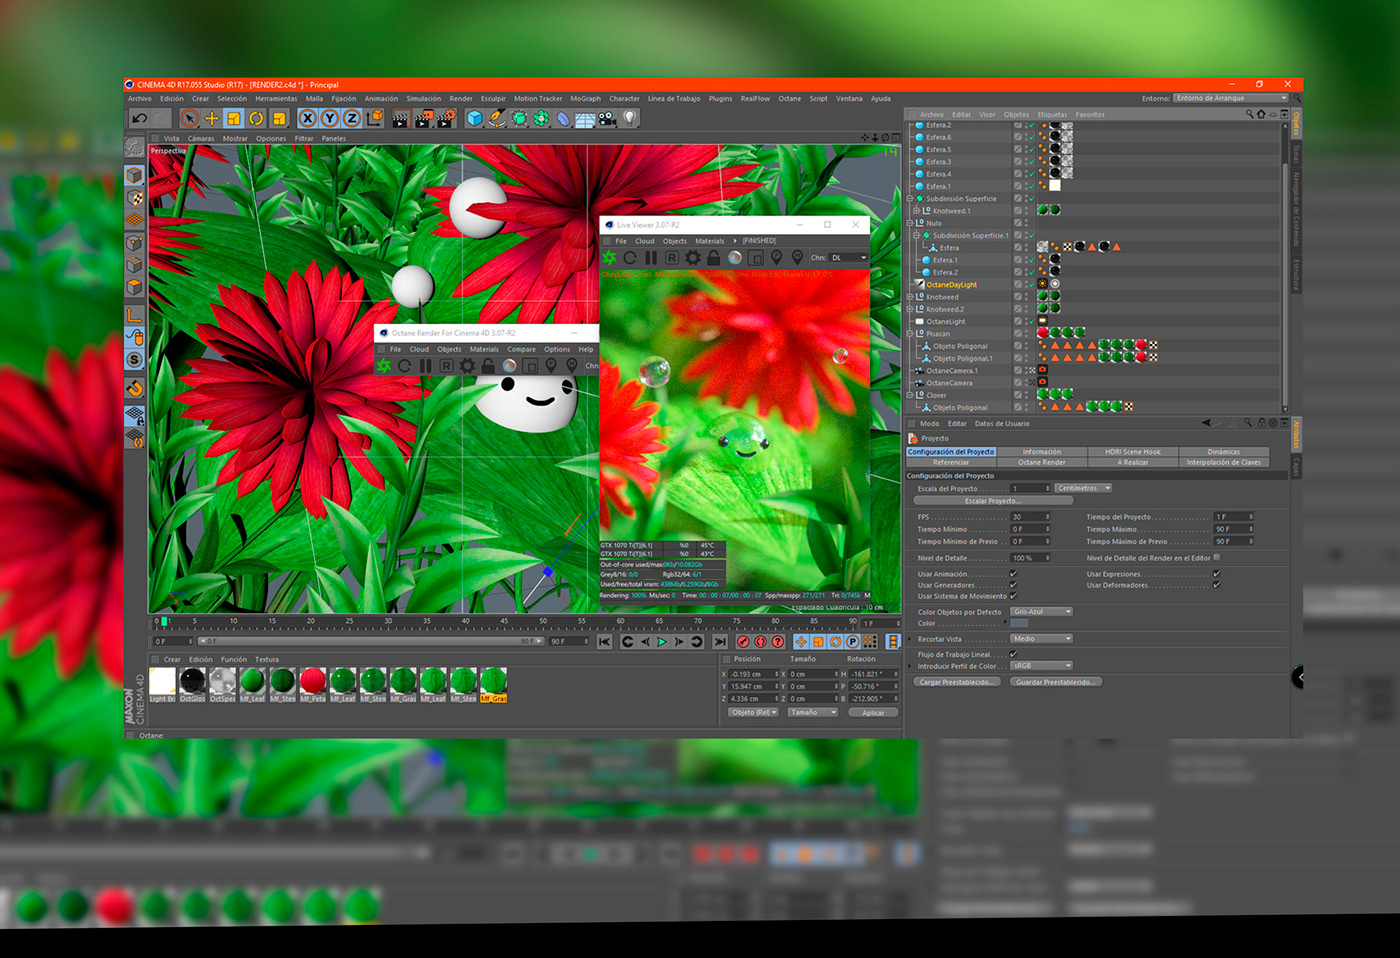 Render 3D Zbrush Octane Render Cineam 4d cute happy rendering cd4 colors